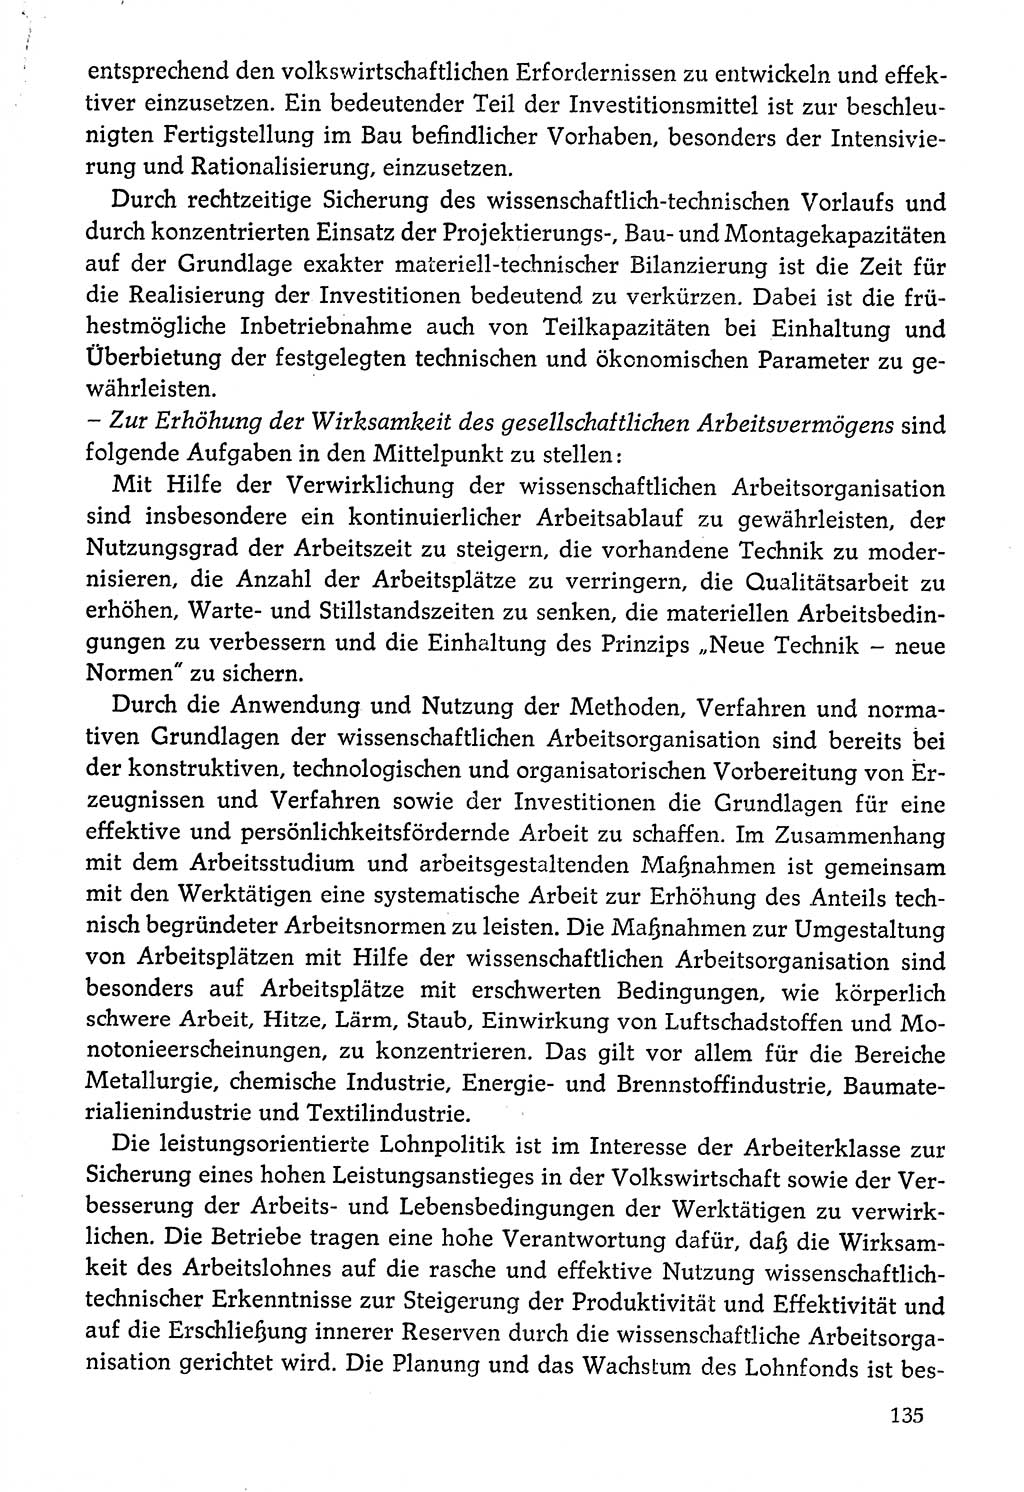 Dokumente der Sozialistischen Einheitspartei Deutschlands (SED) [Deutsche Demokratische Republik (DDR)] 1976-1977, Seite 135 (Dok. SED DDR 1976-1977, S. 135)